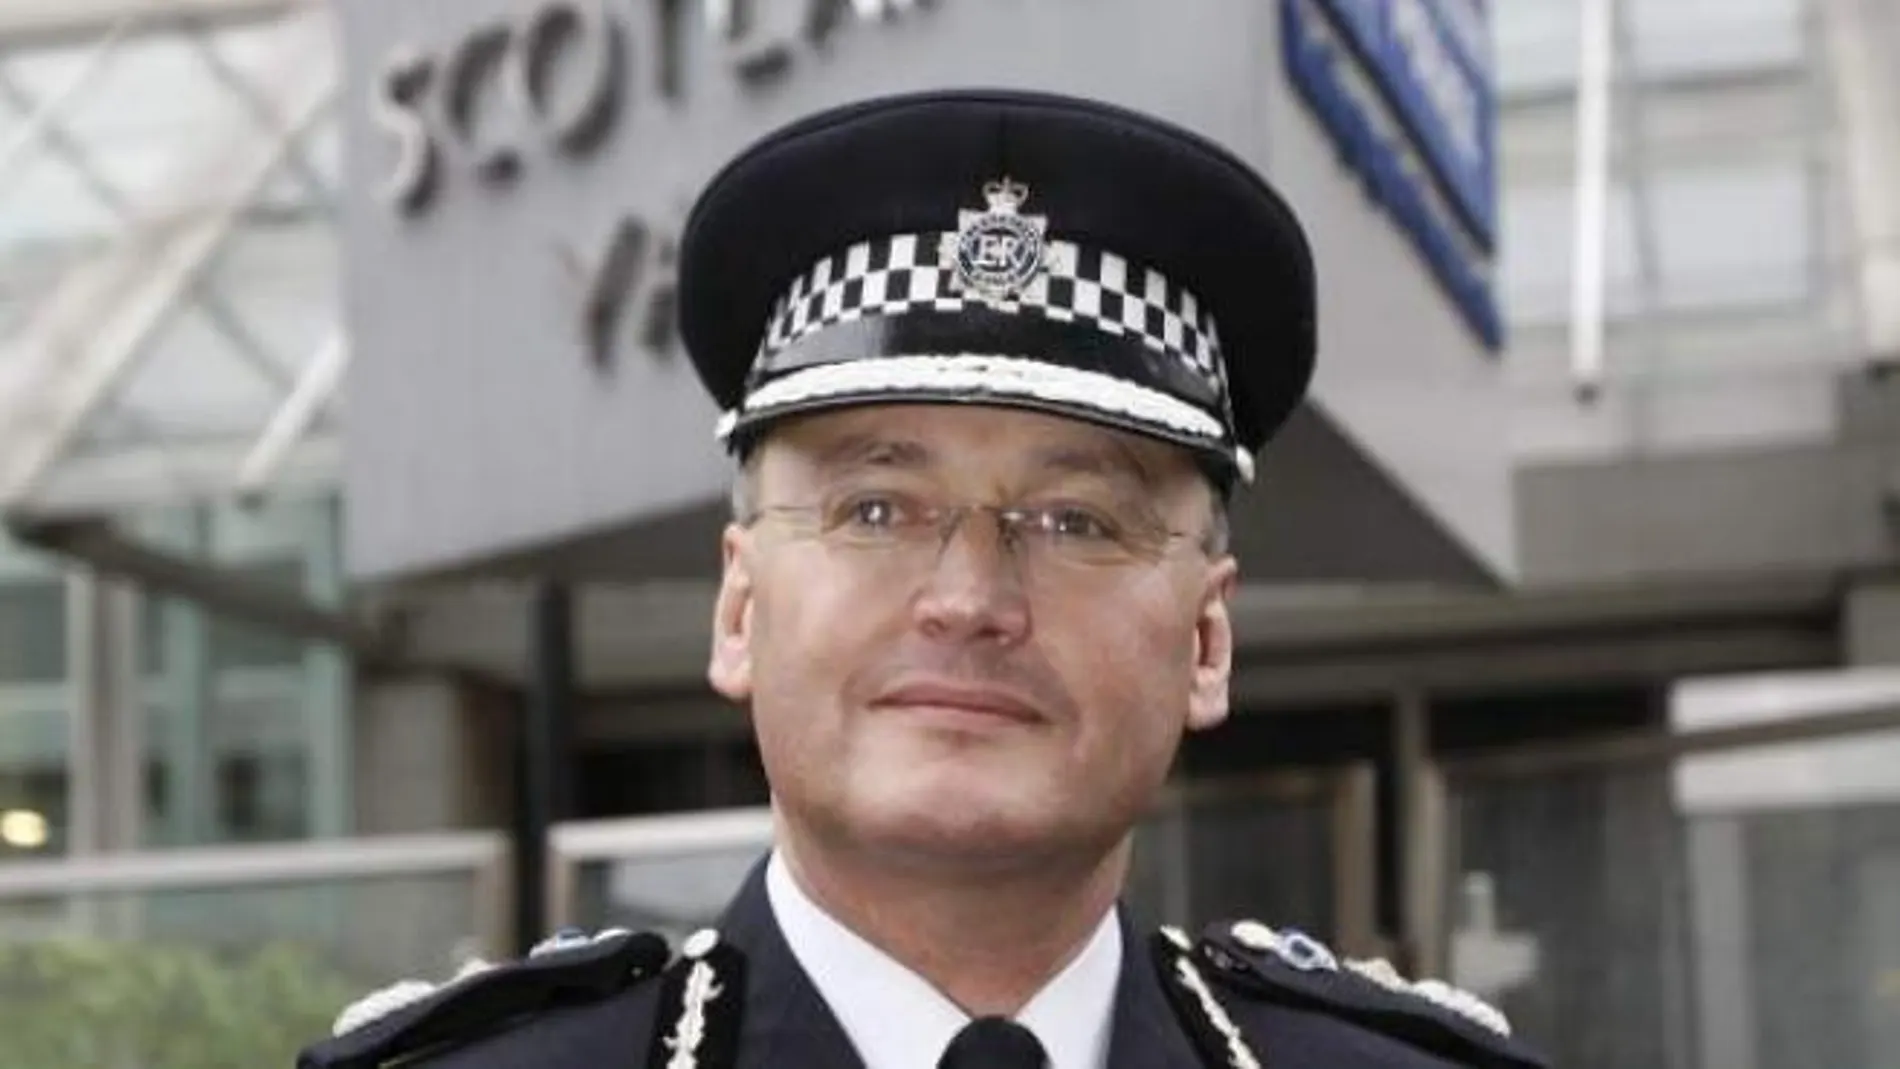 Dimite un jefe de Policía inglés tras definir sobre cómo deben actuar las mujeres en las calles: "Deben ser astutas"